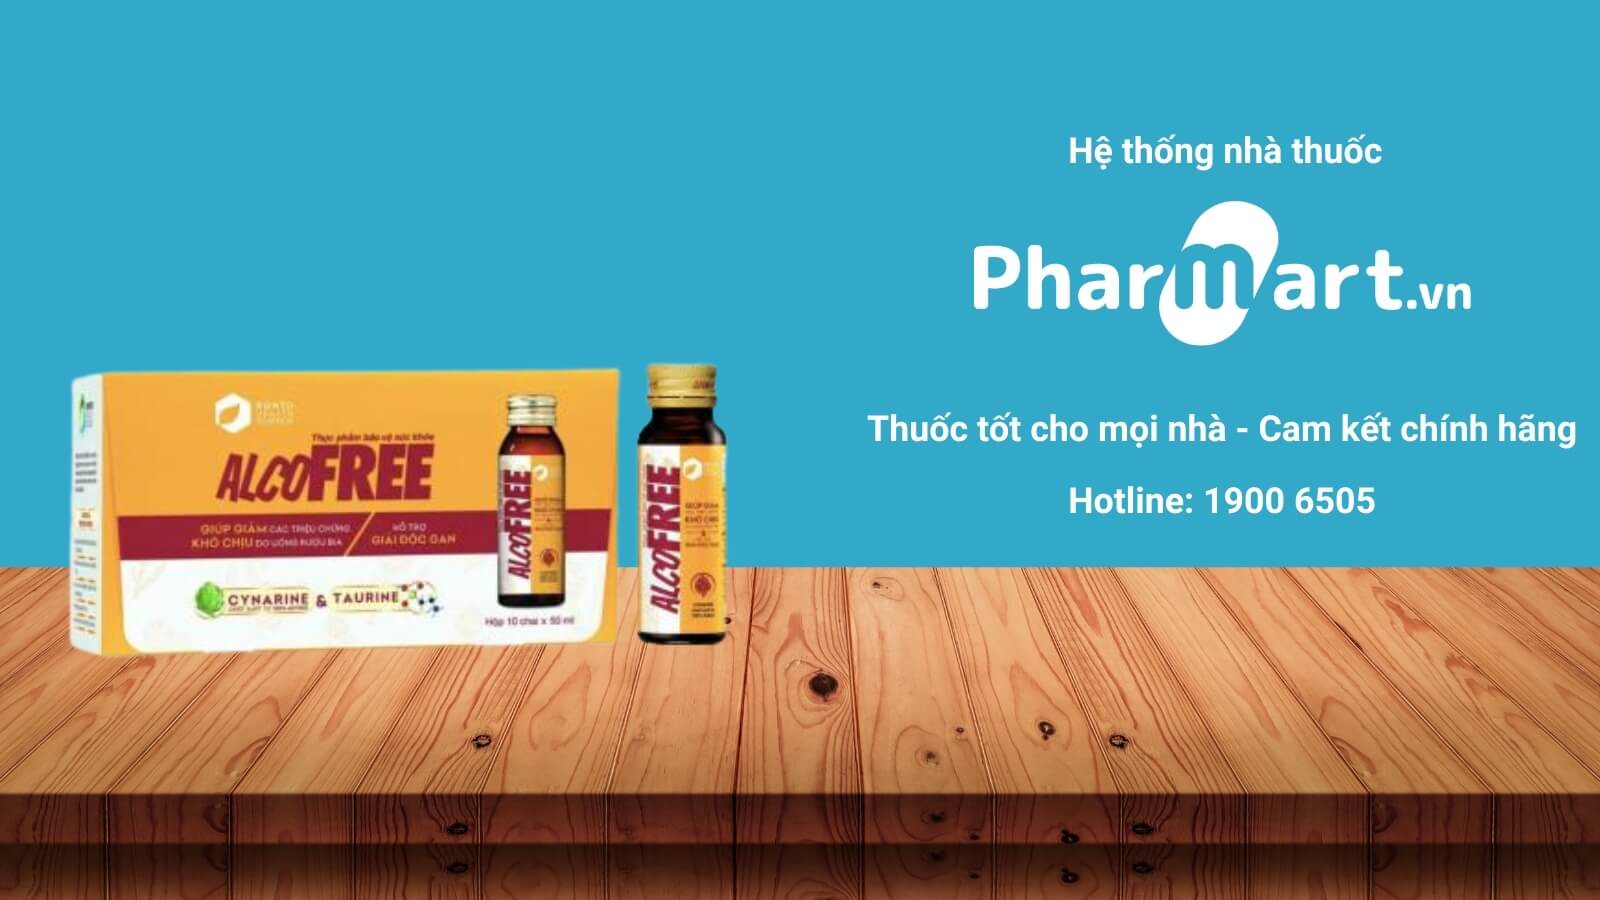 Mua ngay Rohto Alcofree chính hãng tại Pharmart.vn.